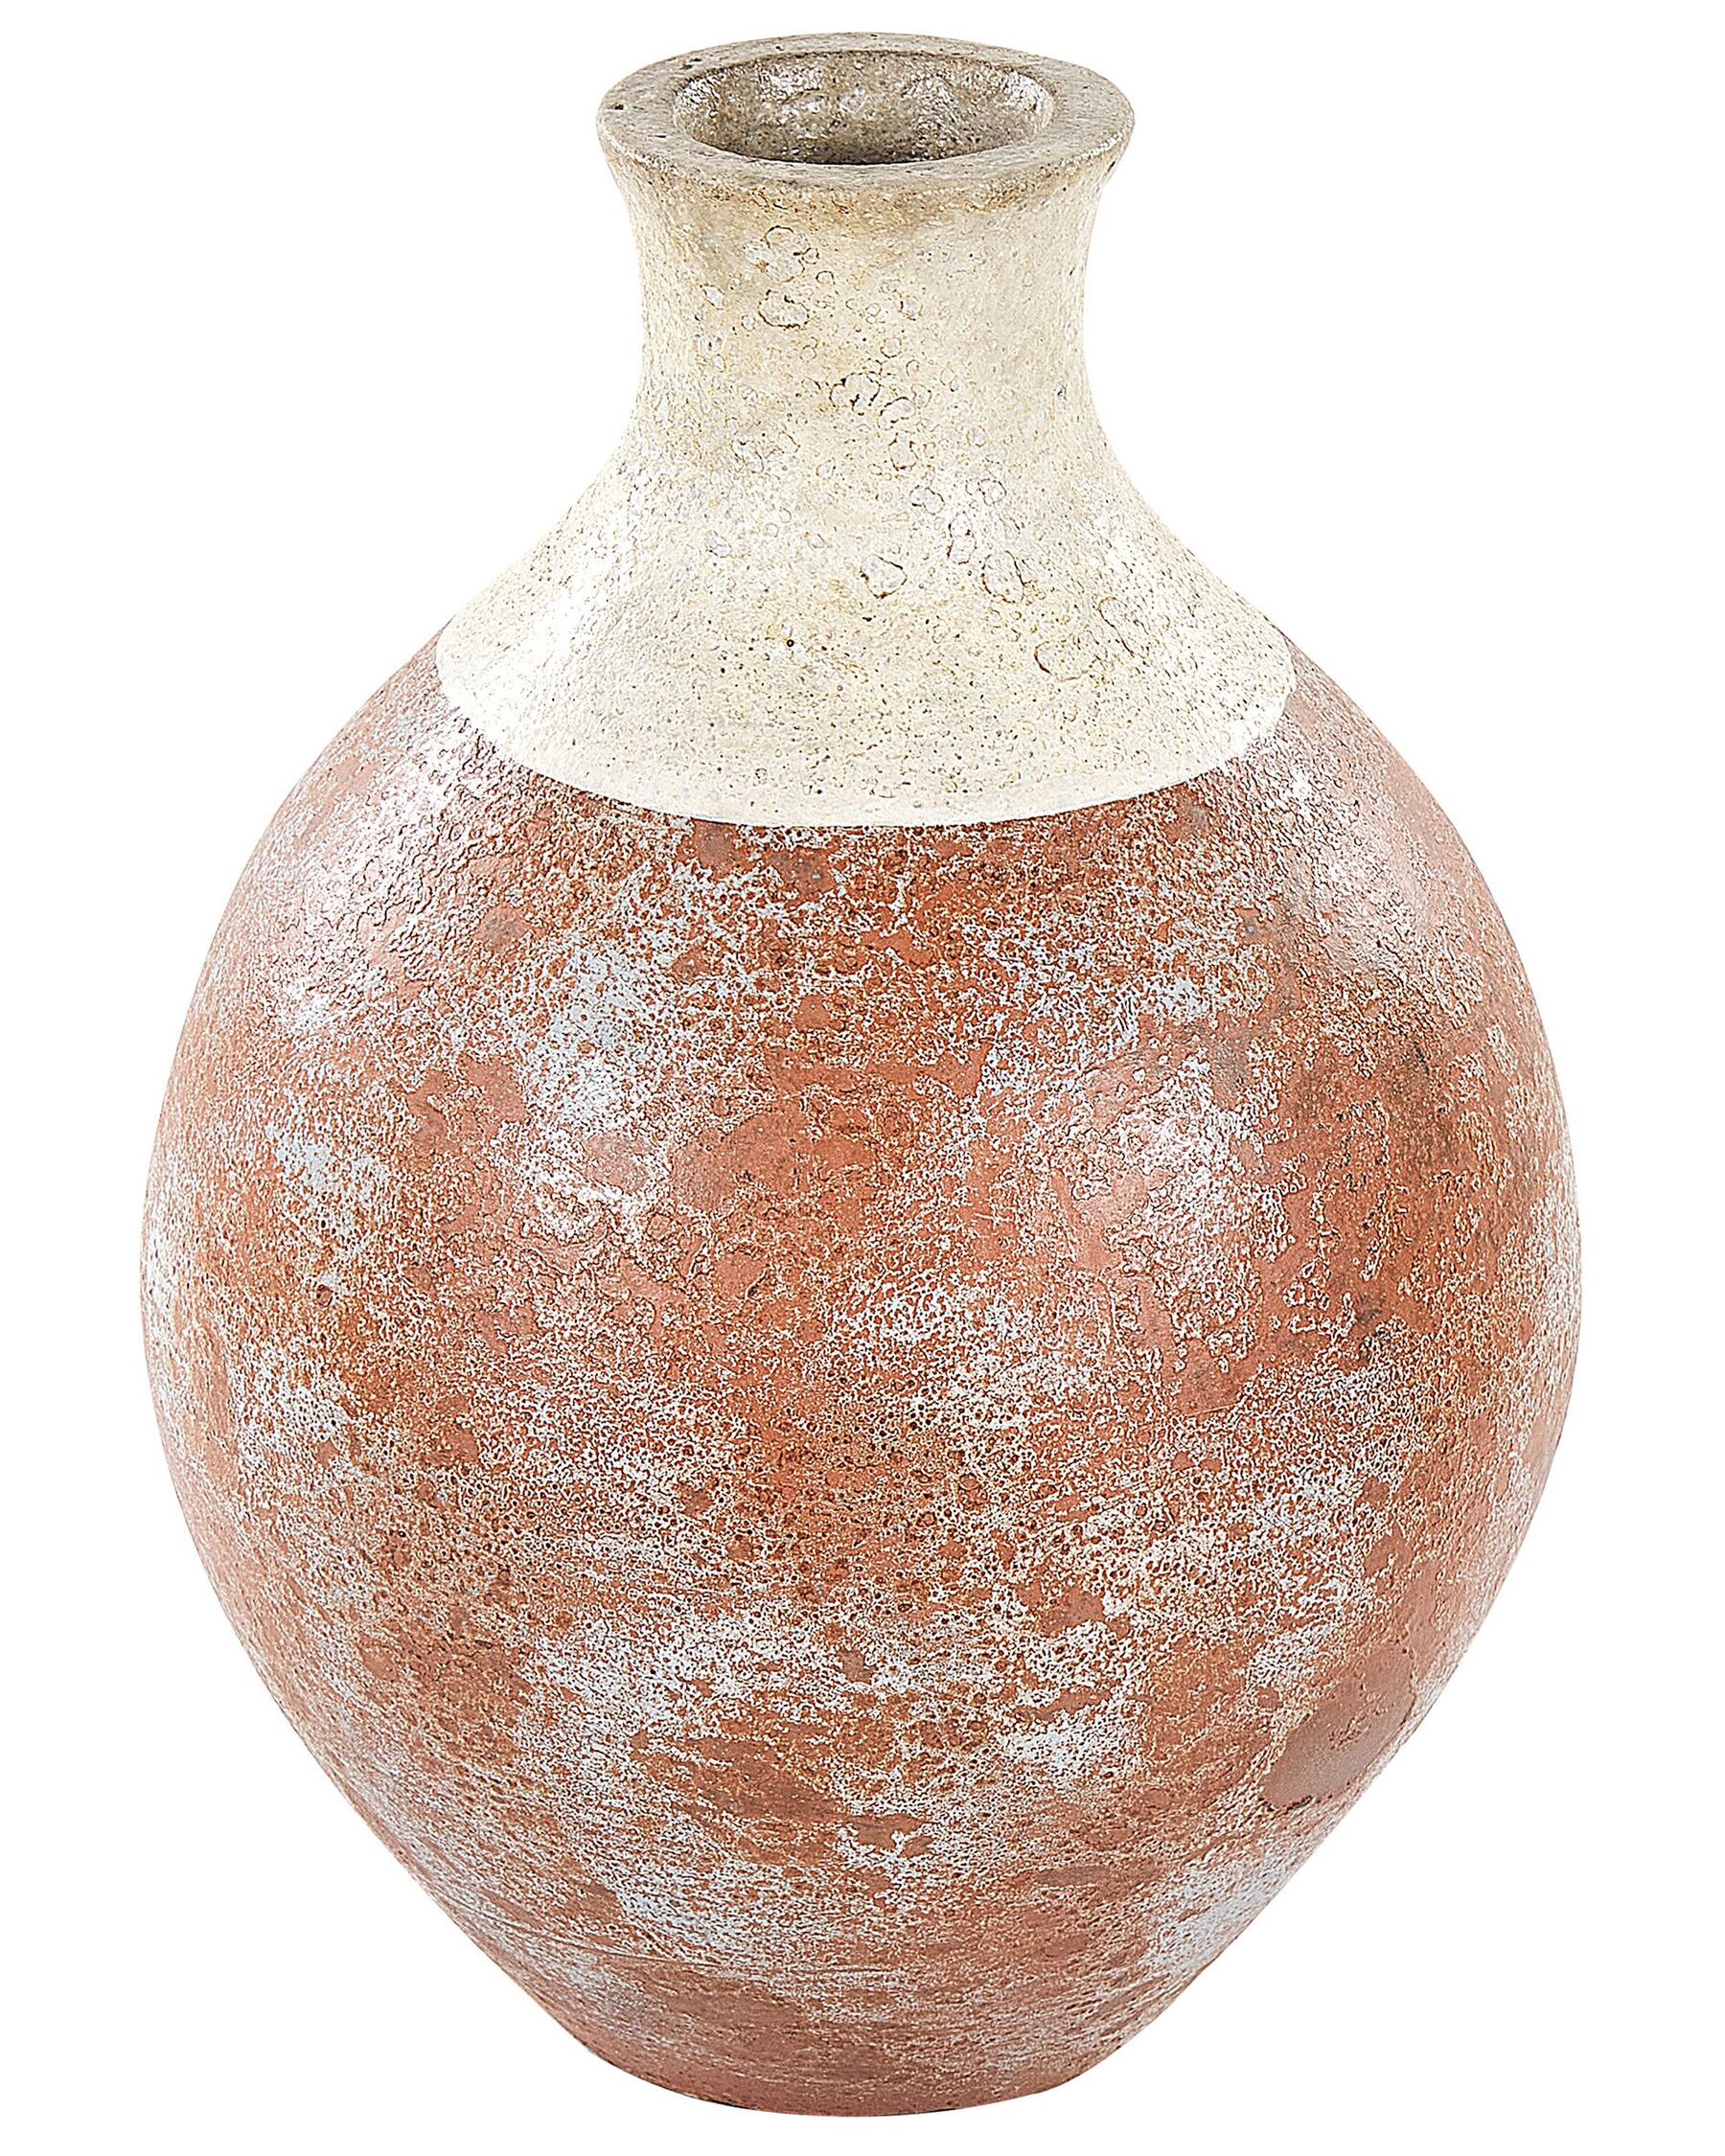 Terakotová dekorativní váza 37 cm bílá/hnědá BURSA_850843